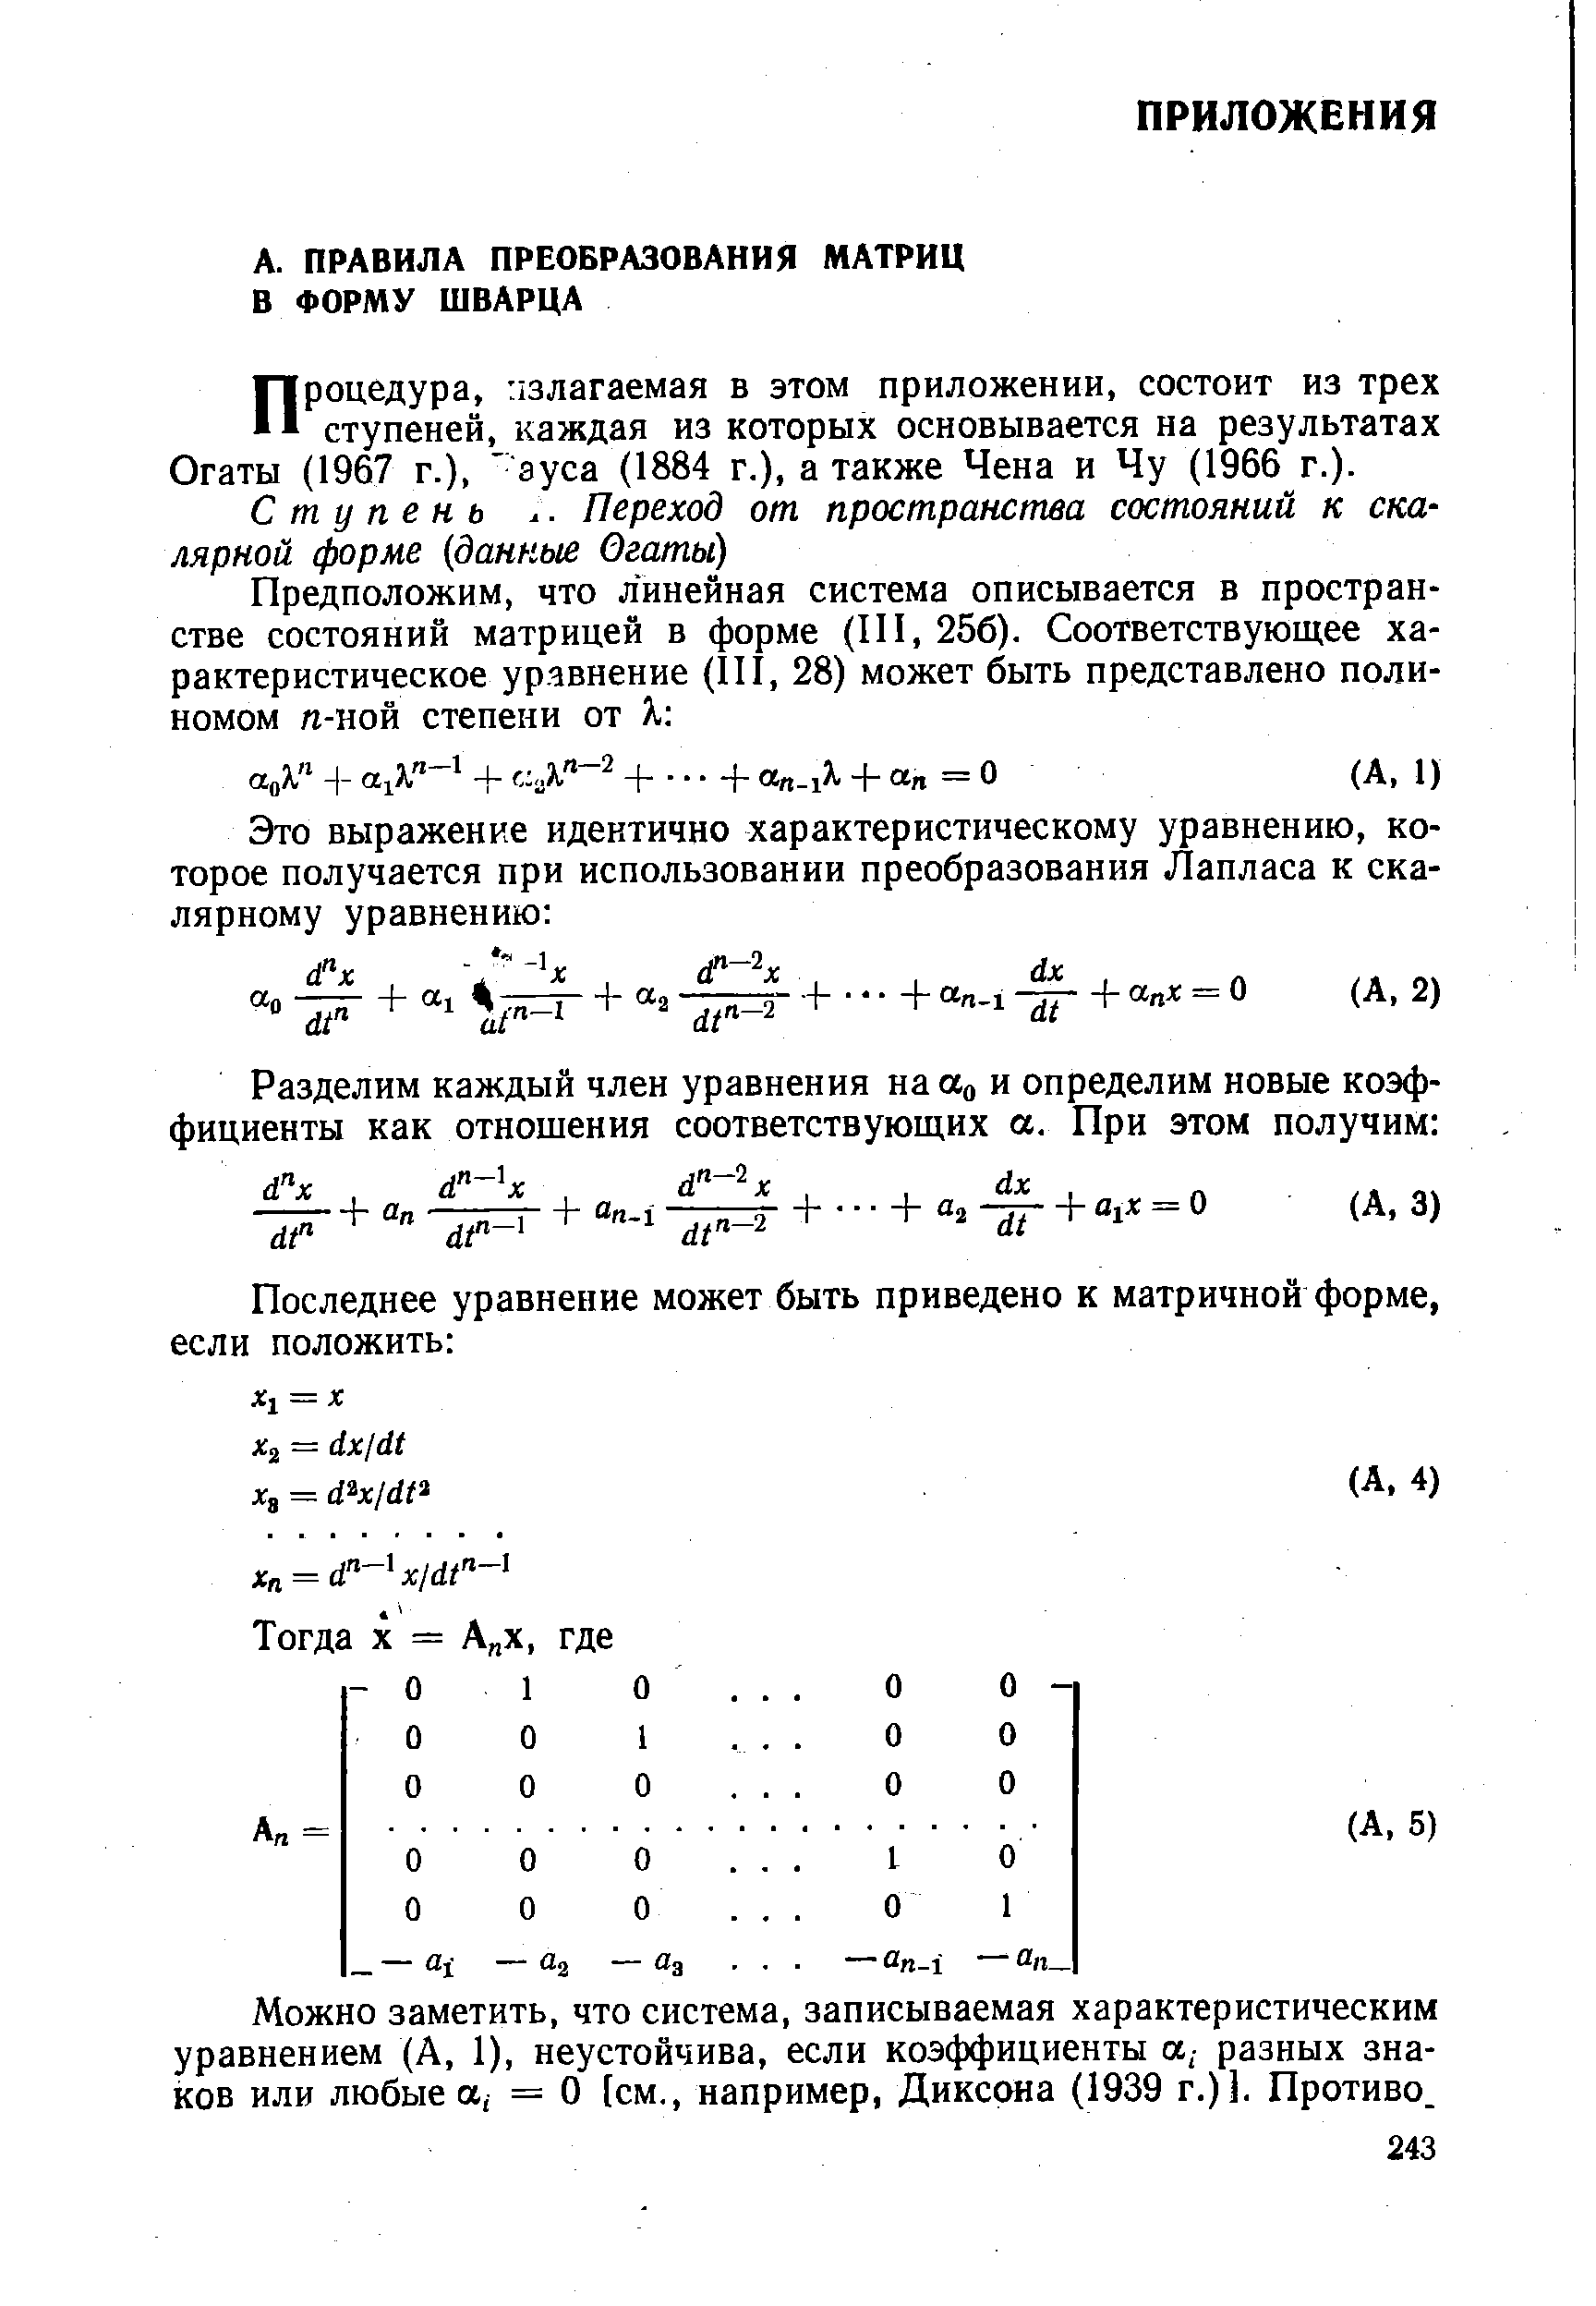 Можно заметить, что система, записываемая характеристическим уравнением (А, 1), неустойчива, если коэффициенты а,- разных знаков или любые а, = О [см., например, Диксона (1939 г.)3. Противо.